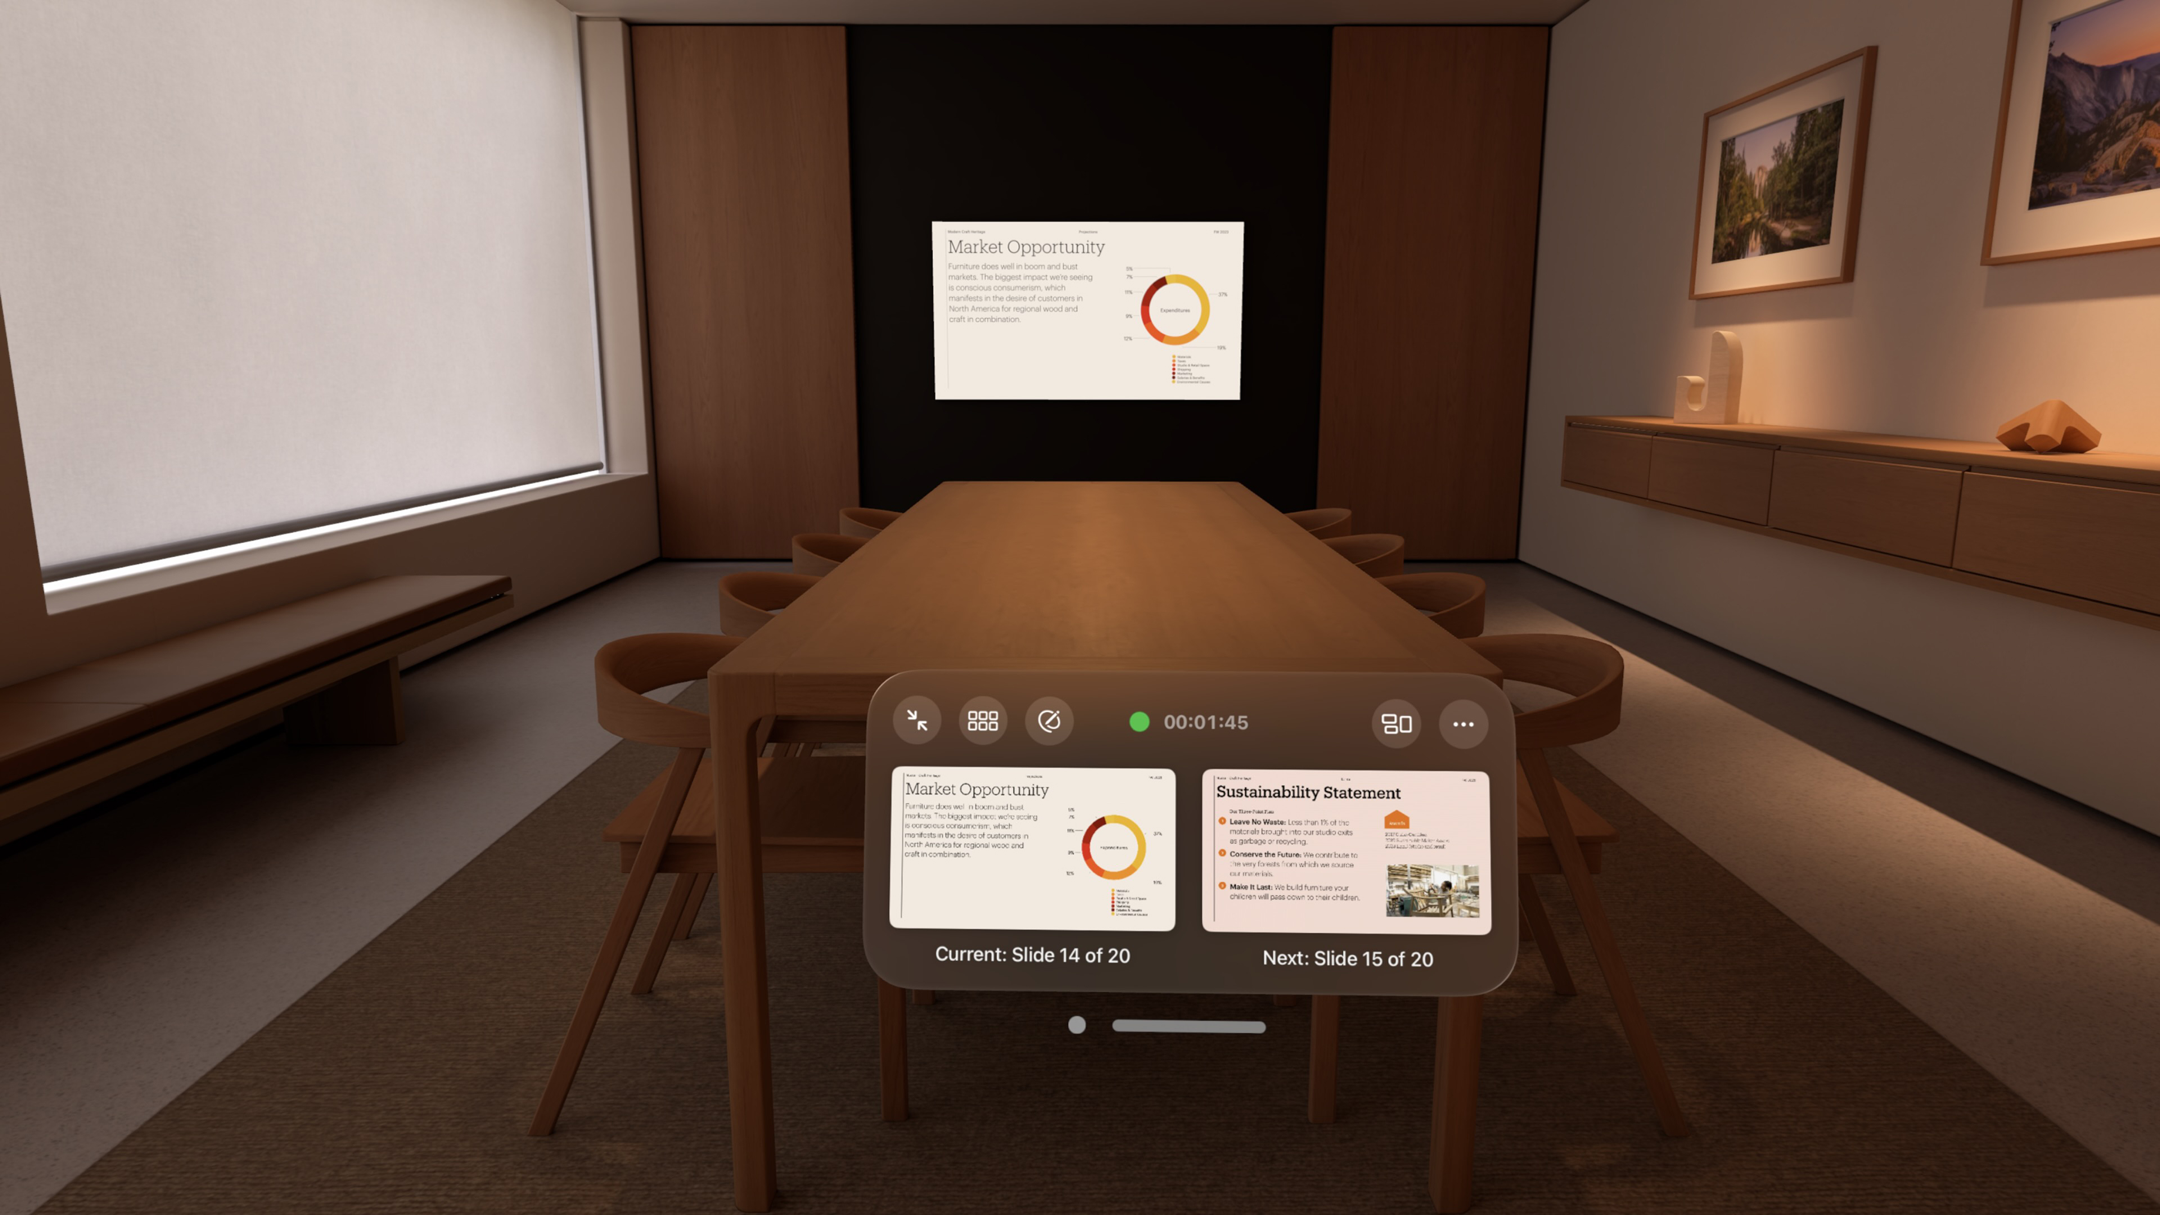 Галерея: подробный обзор того, как выглядит Keynote на Apple Vision Pro.